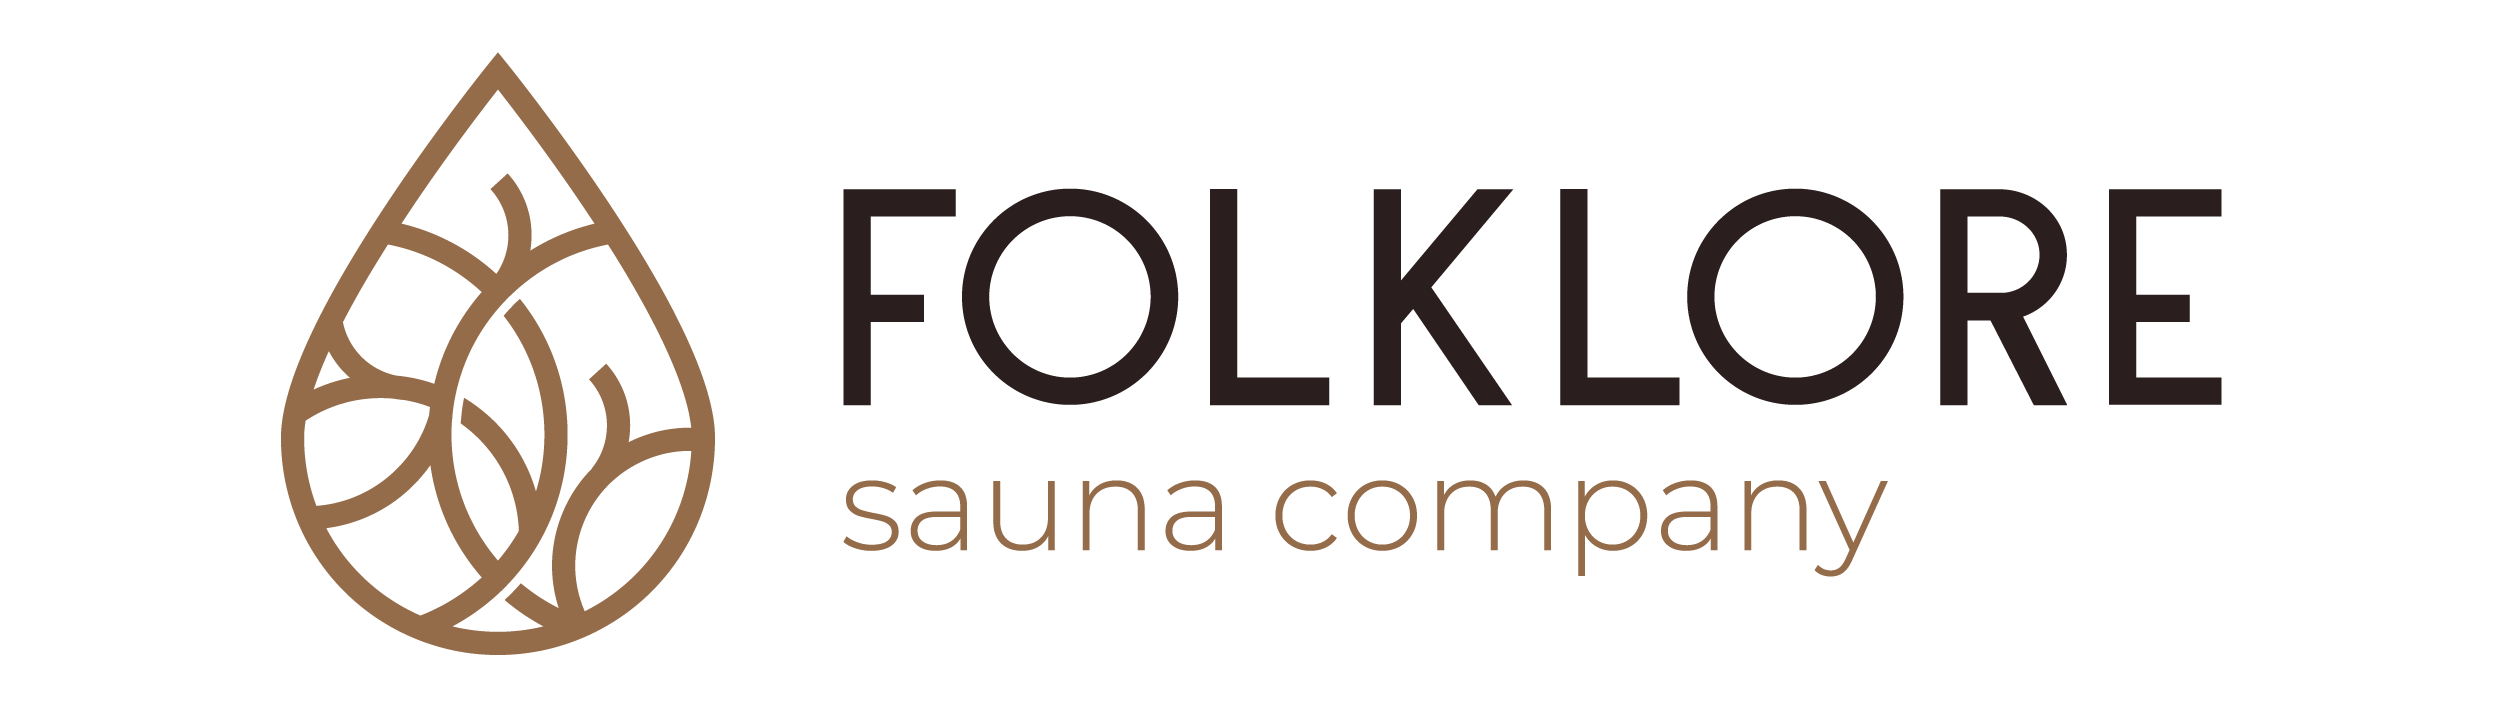 Folklore Sauna Company 